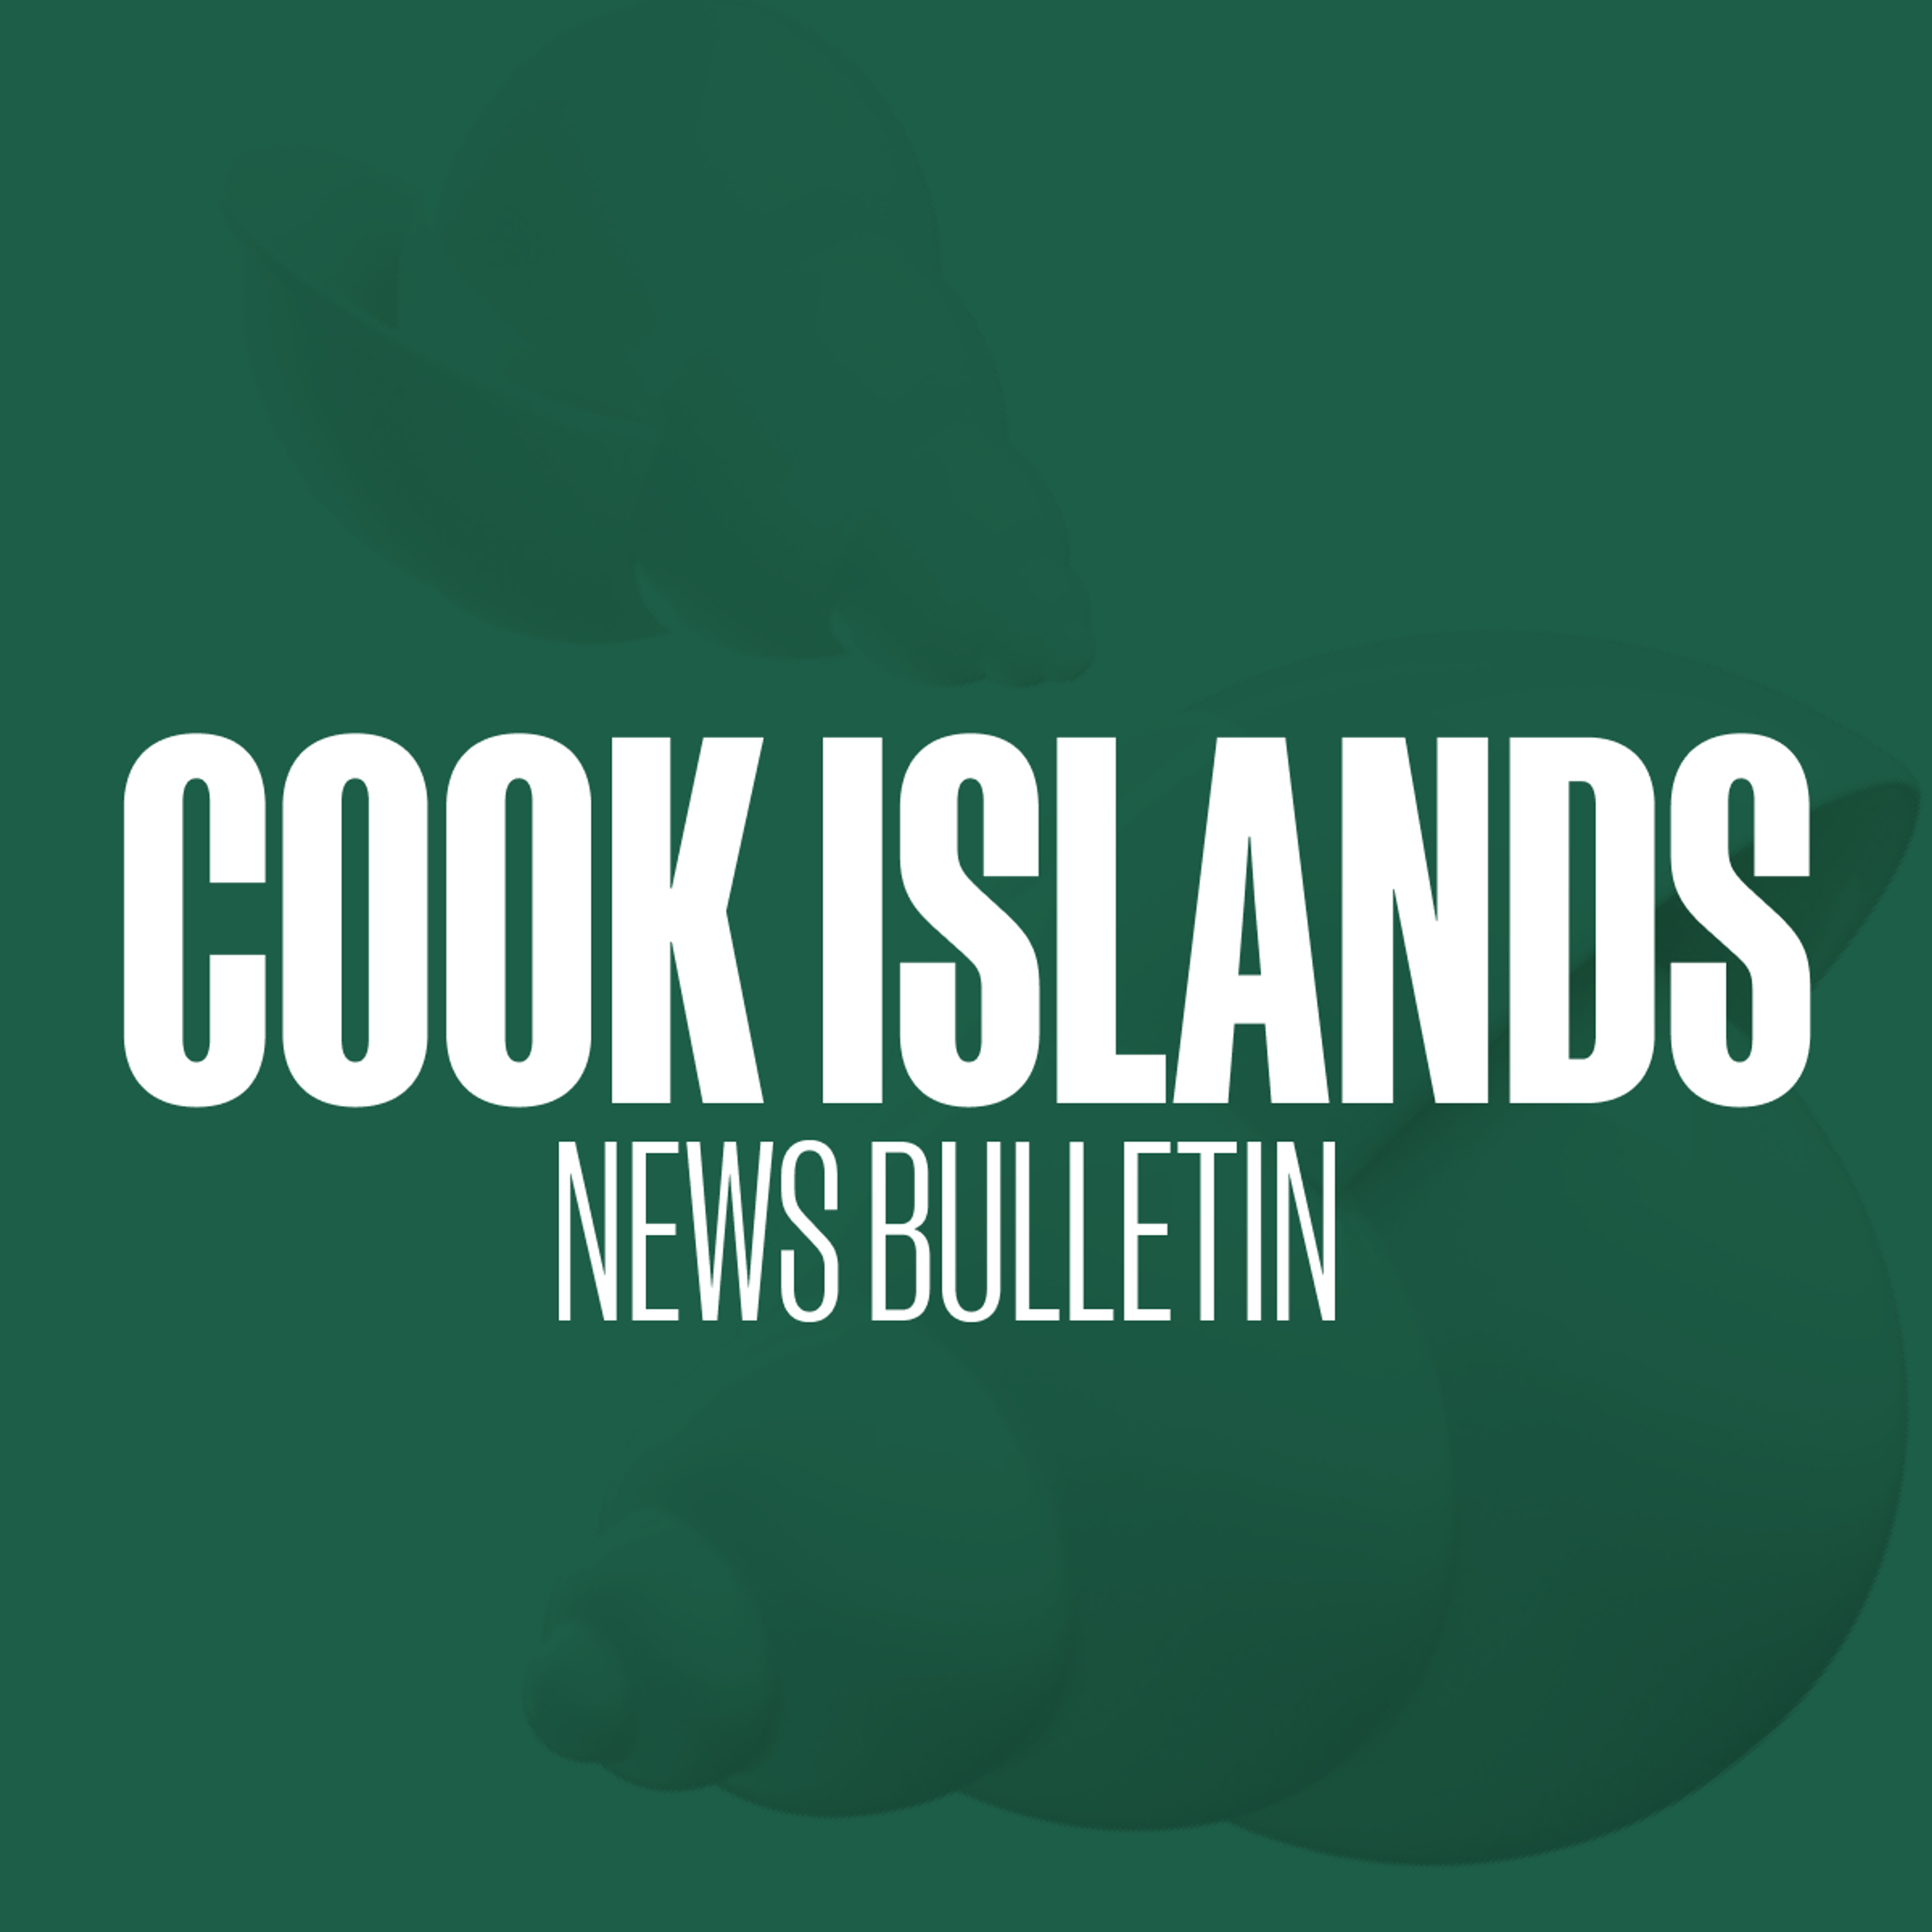 Daily News in Cook Islands Maori